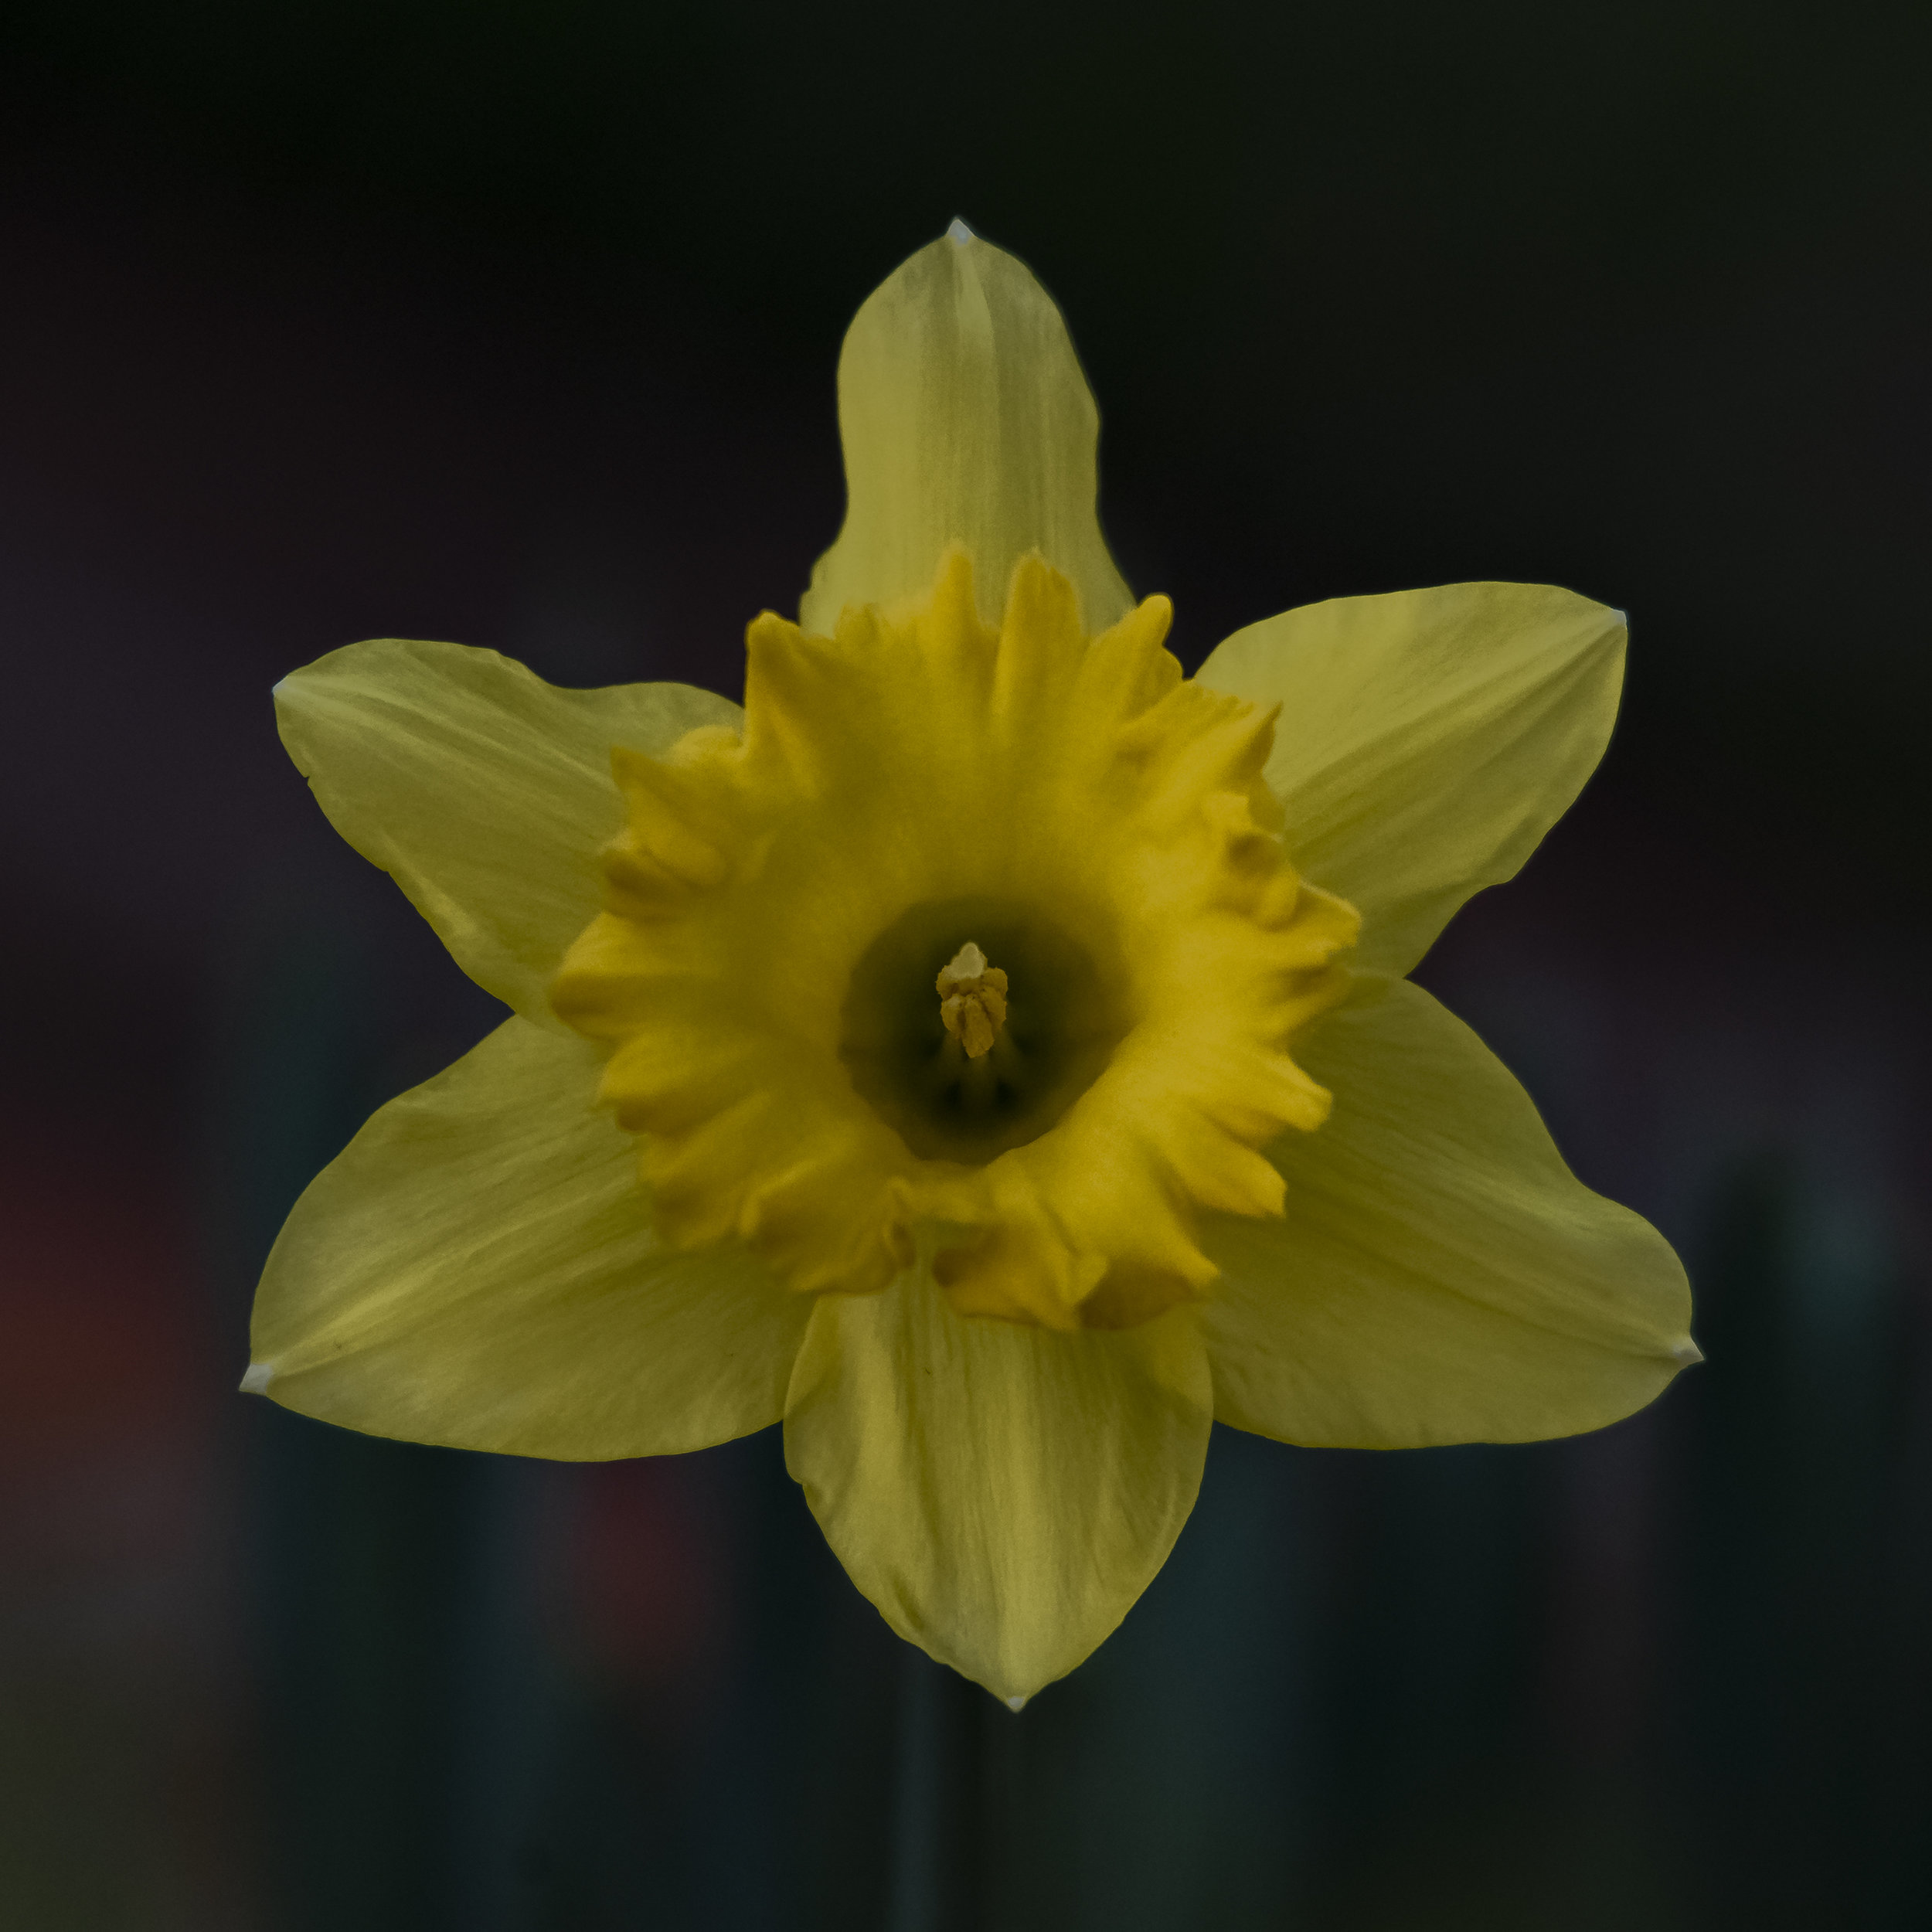 Daffodil in San Jose, California